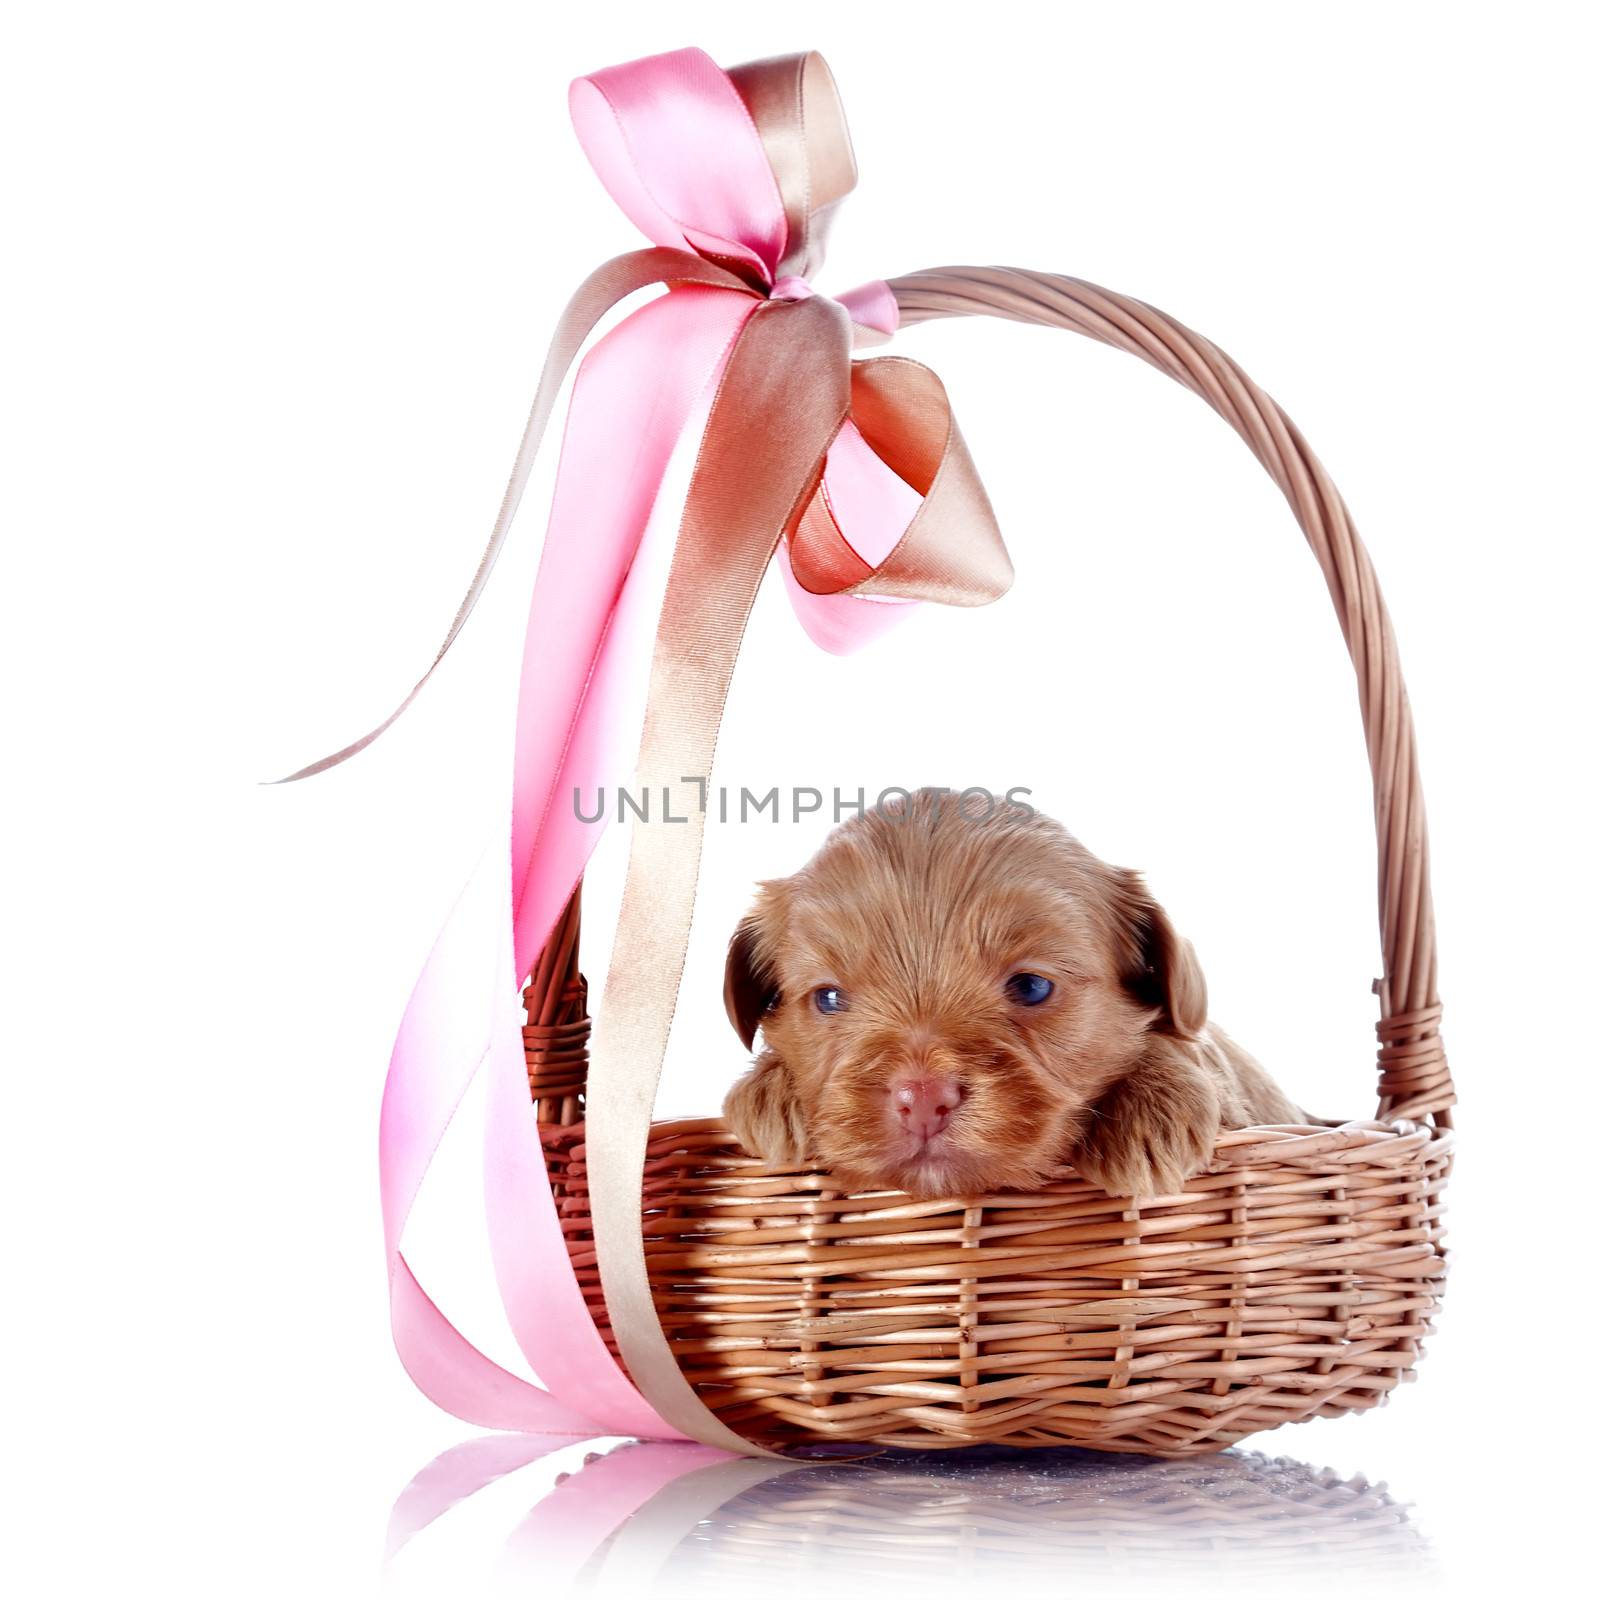 Puppy in a wattled basket with a bow. by Azaliya